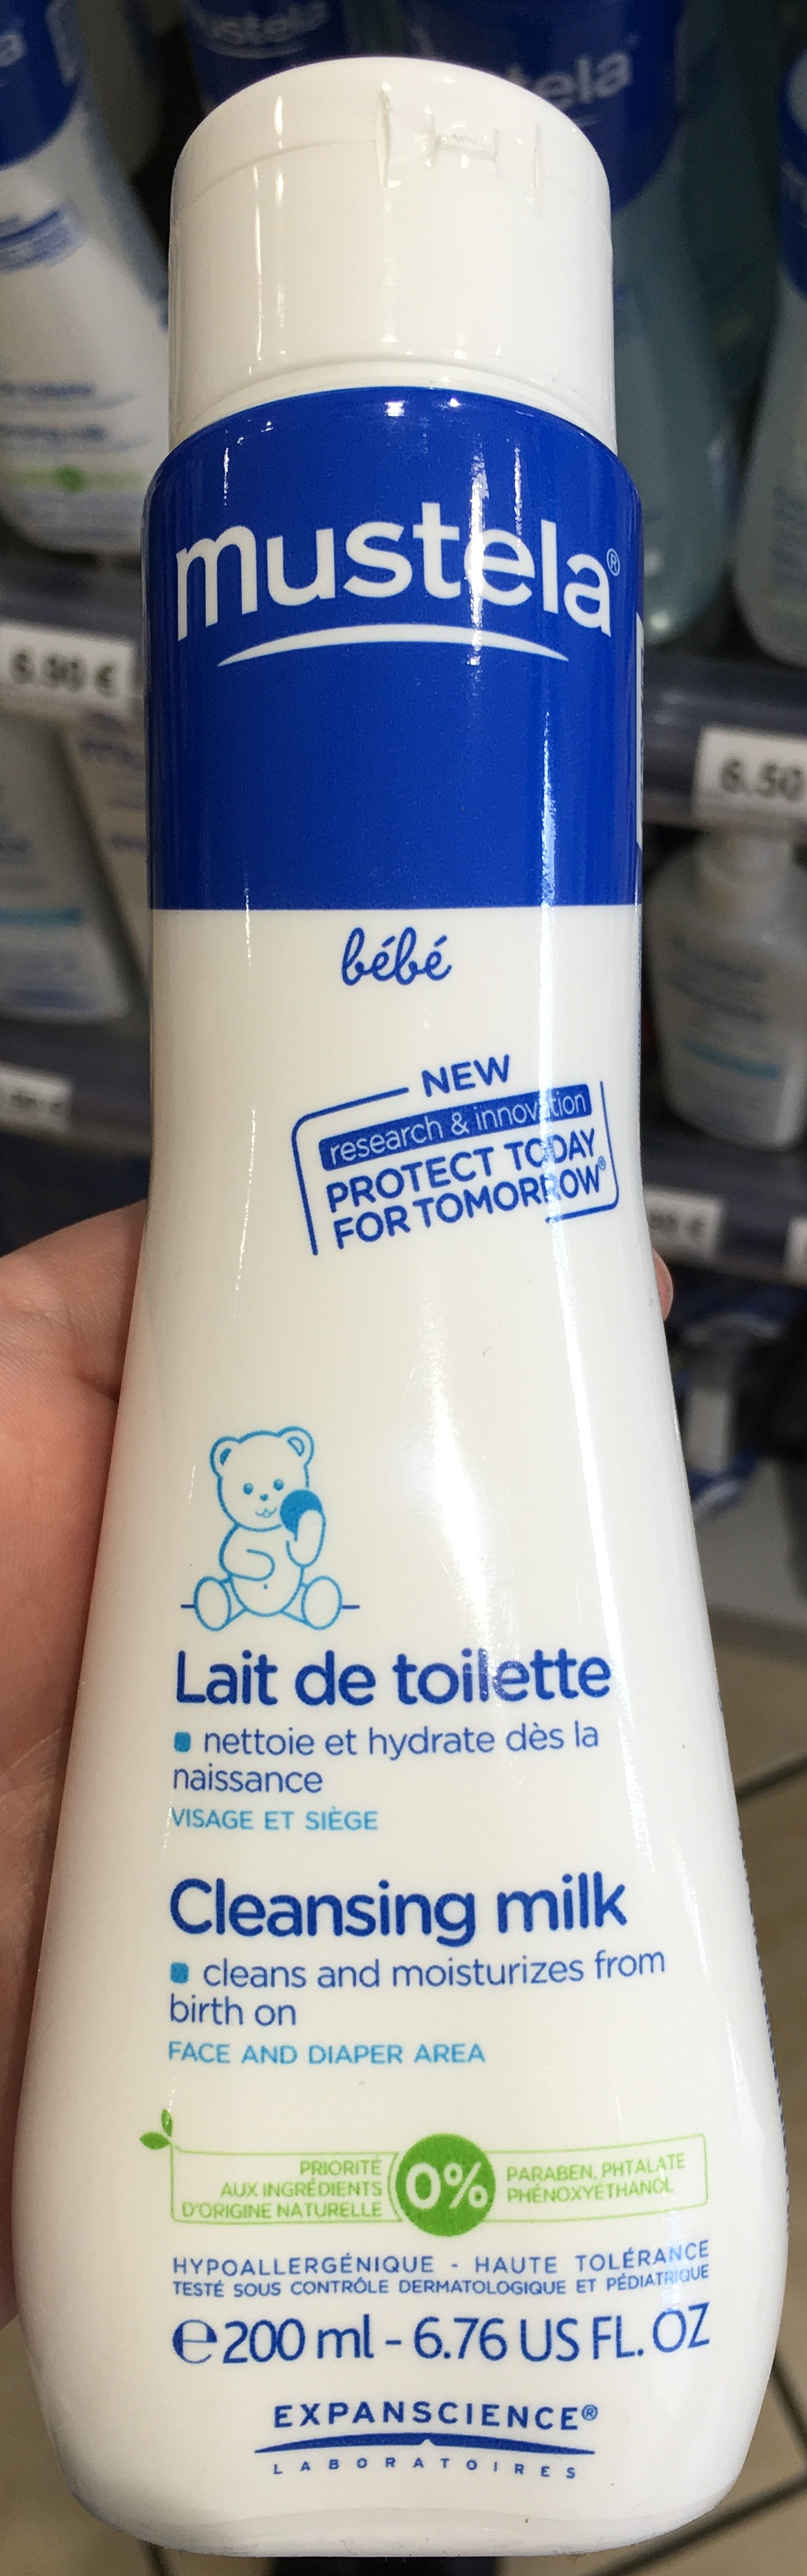 Lait de toilette - Product - fr